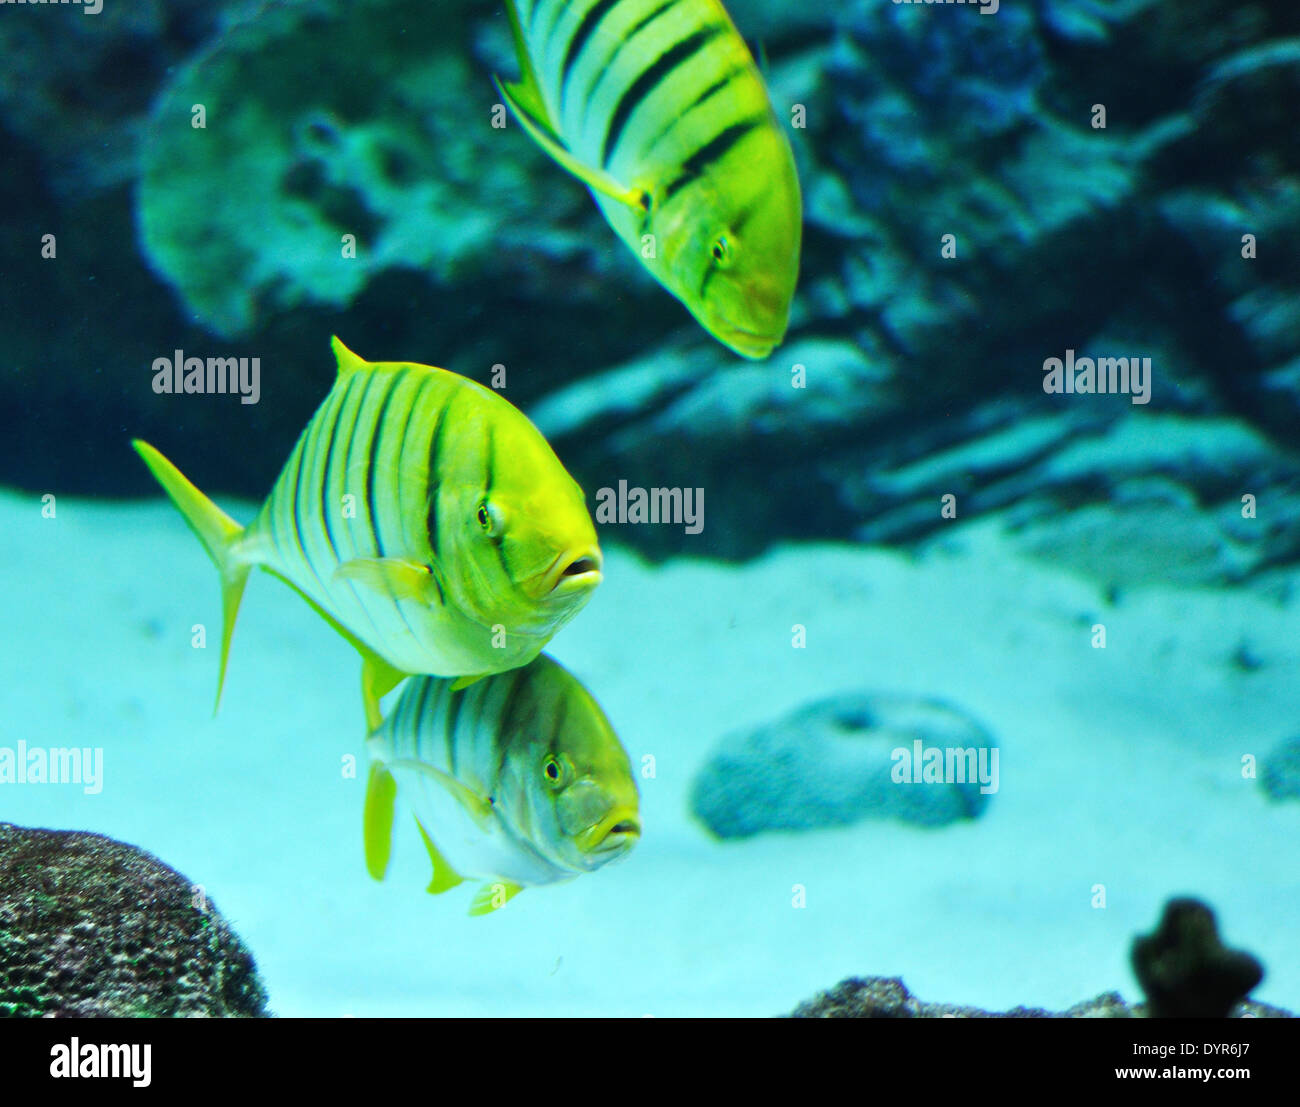 Pesce nero e giallo immagini e fotografie stock ad alta risoluzione - Alamy